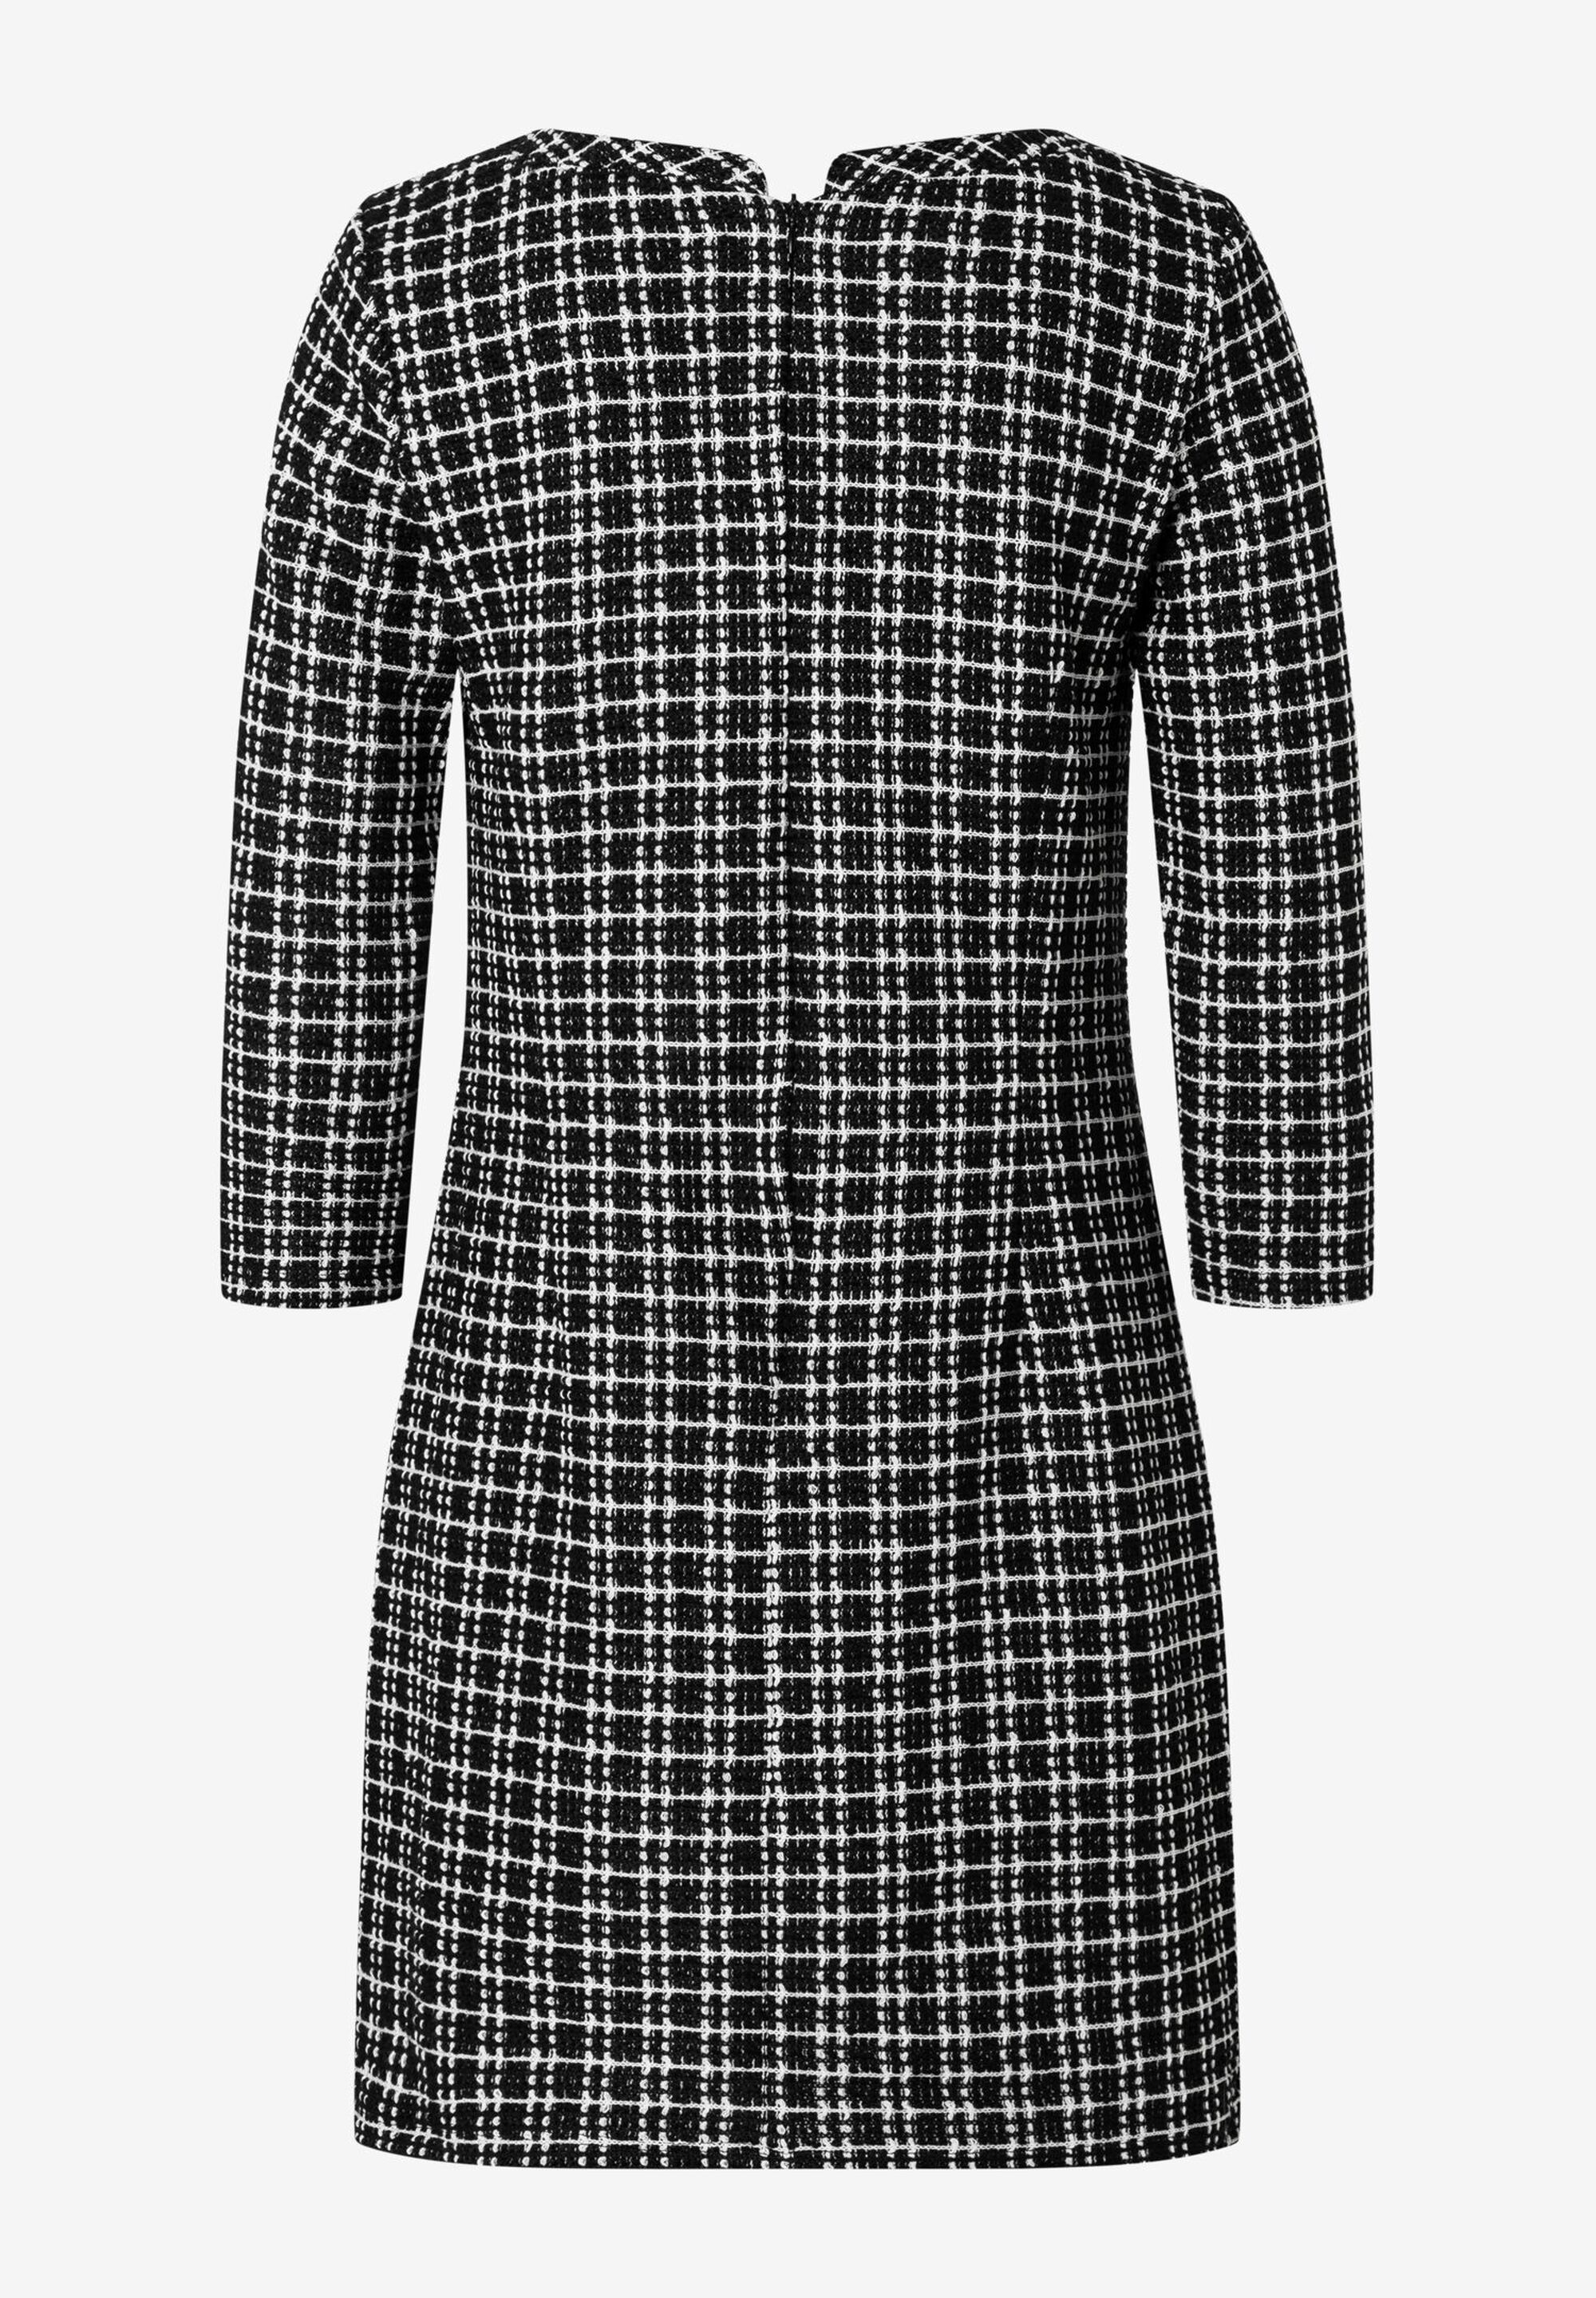 Jerseykleid, schwarz/weiß kariert, offizielle MORE | Onlineshop Der MORE & Winter-Kollektion